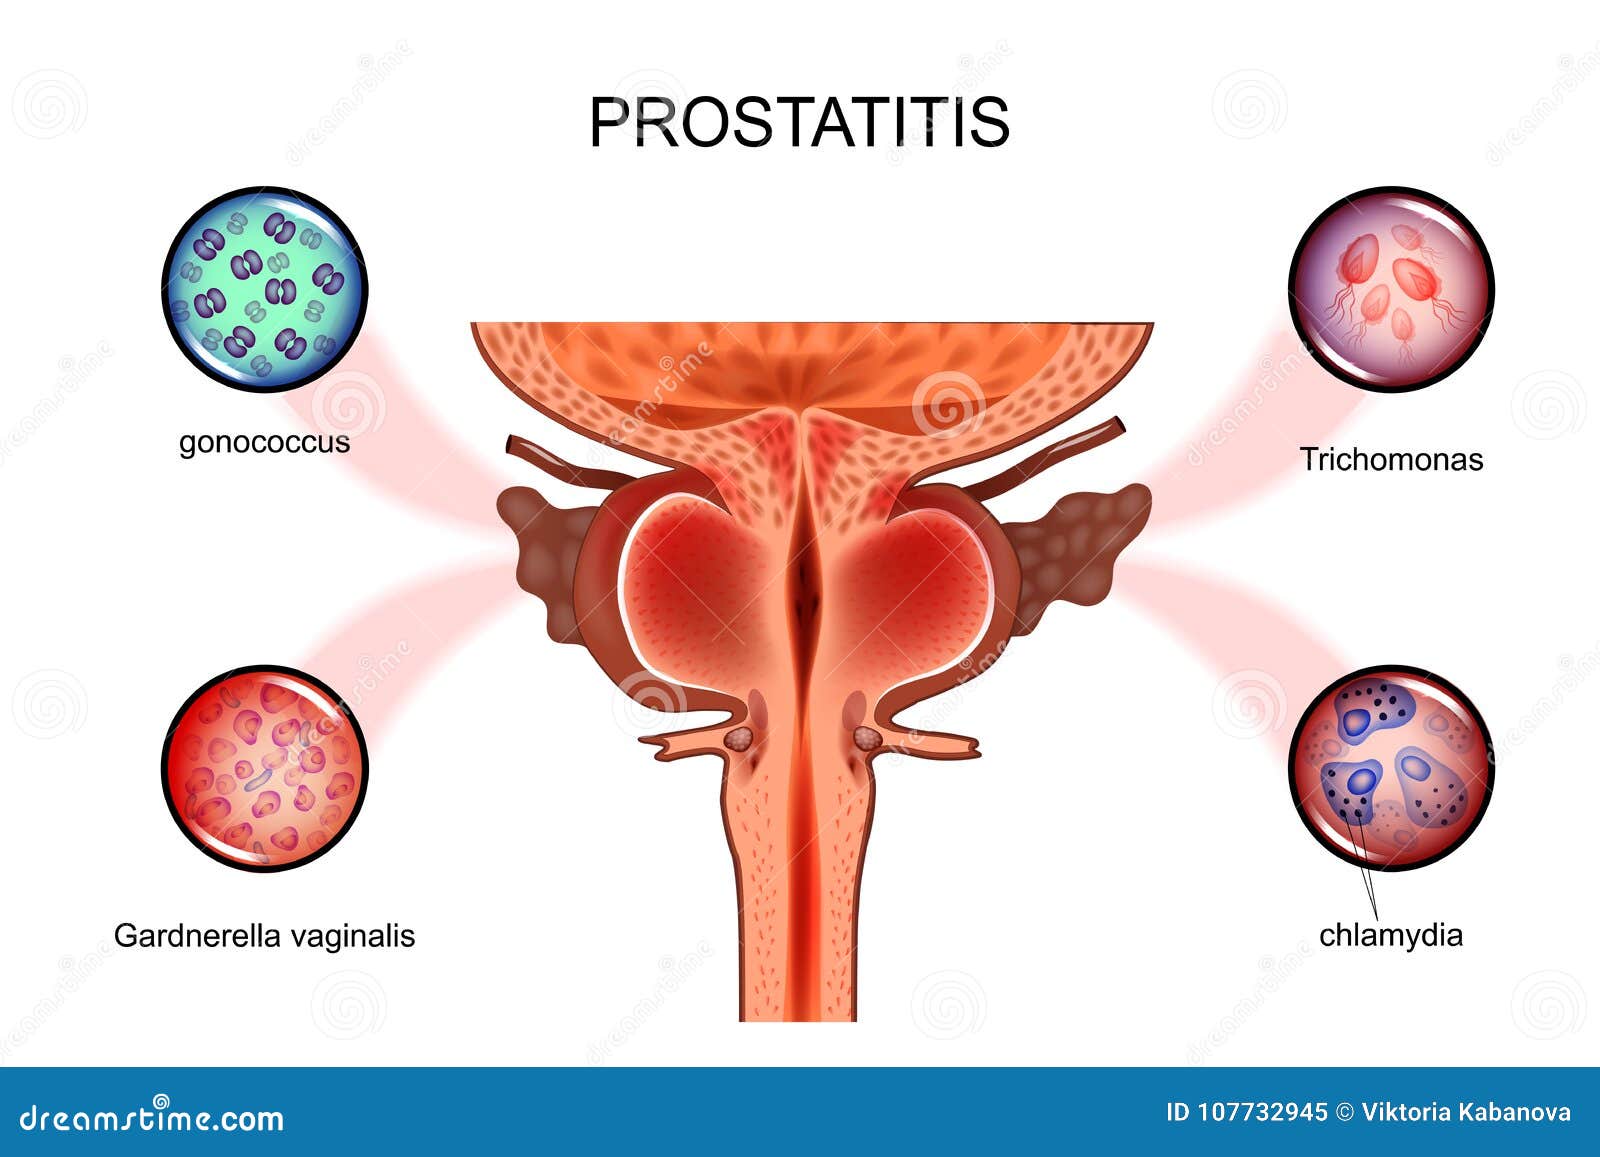 lehet a prostatitis 18 c- on